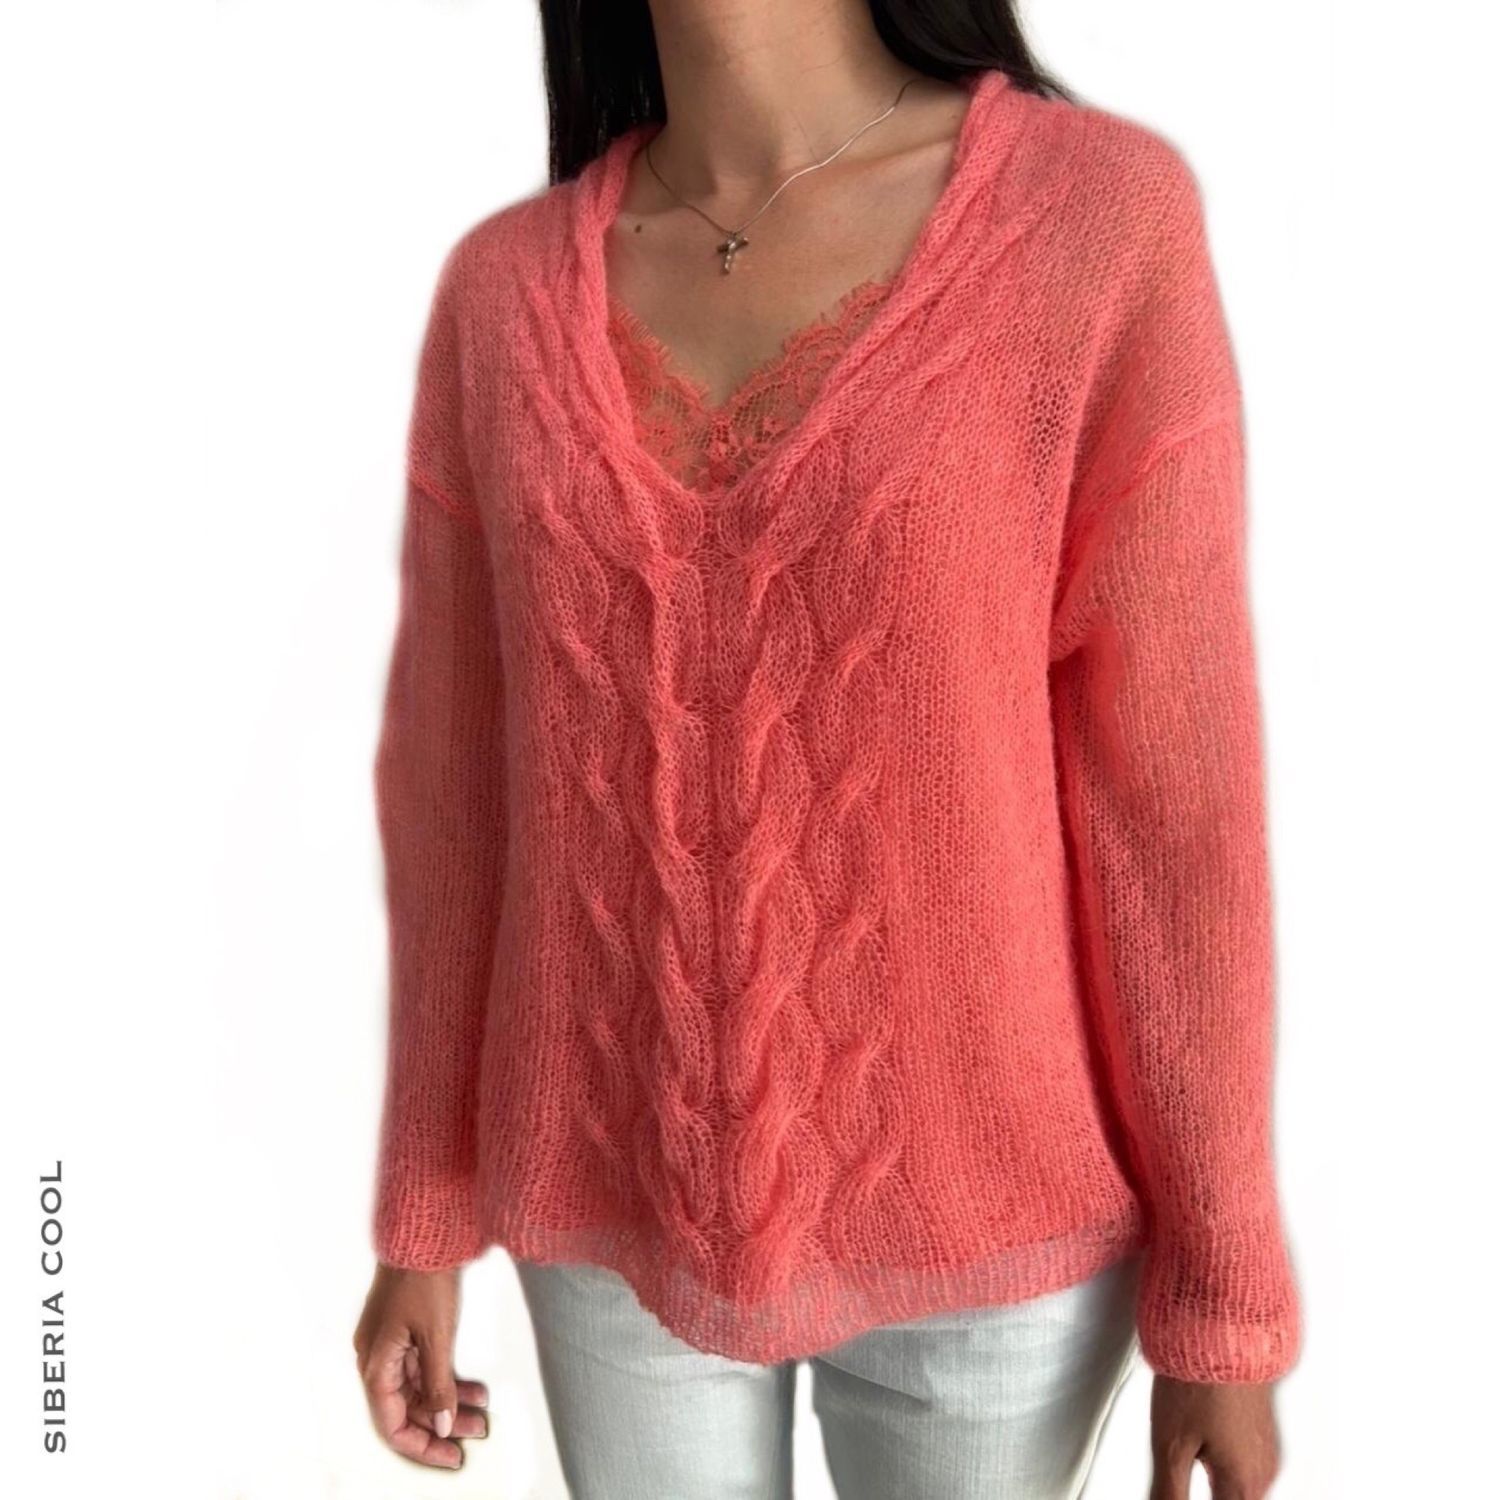 Вязаные пуловеры для женщин спицами с описанием - более 20 схем вязания спицами